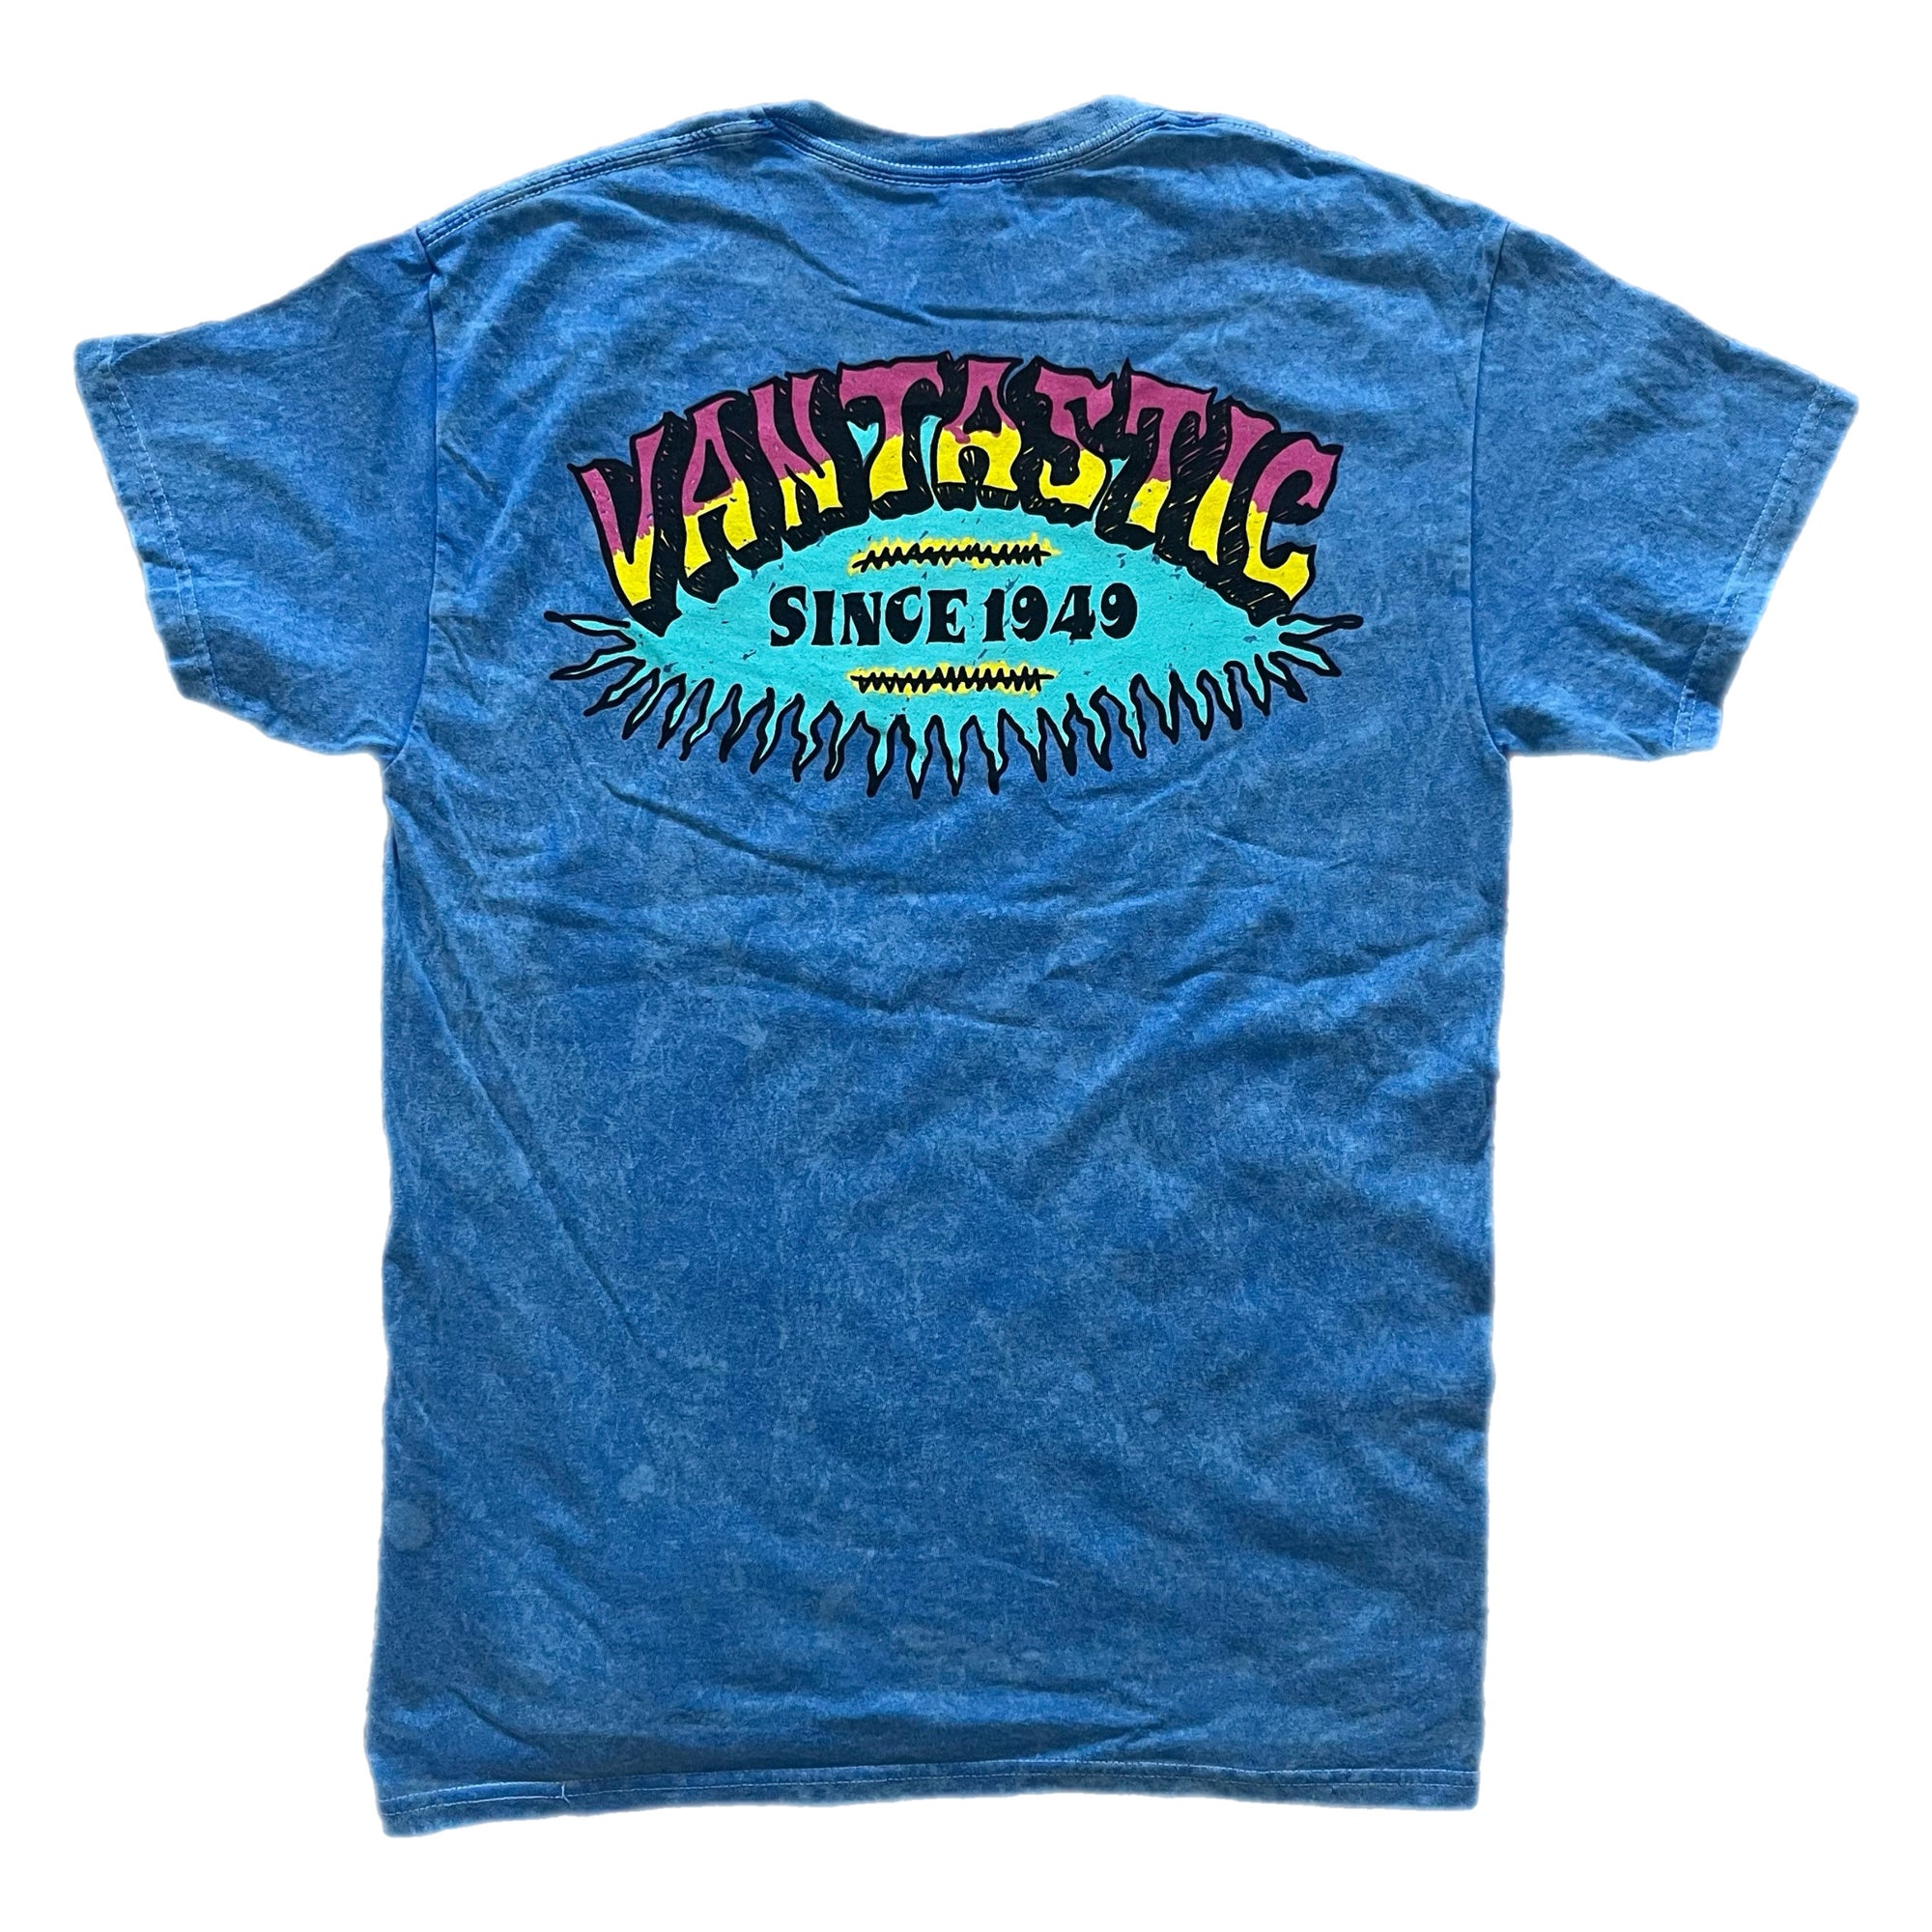 Vintage surf t-shirt - Washed blue